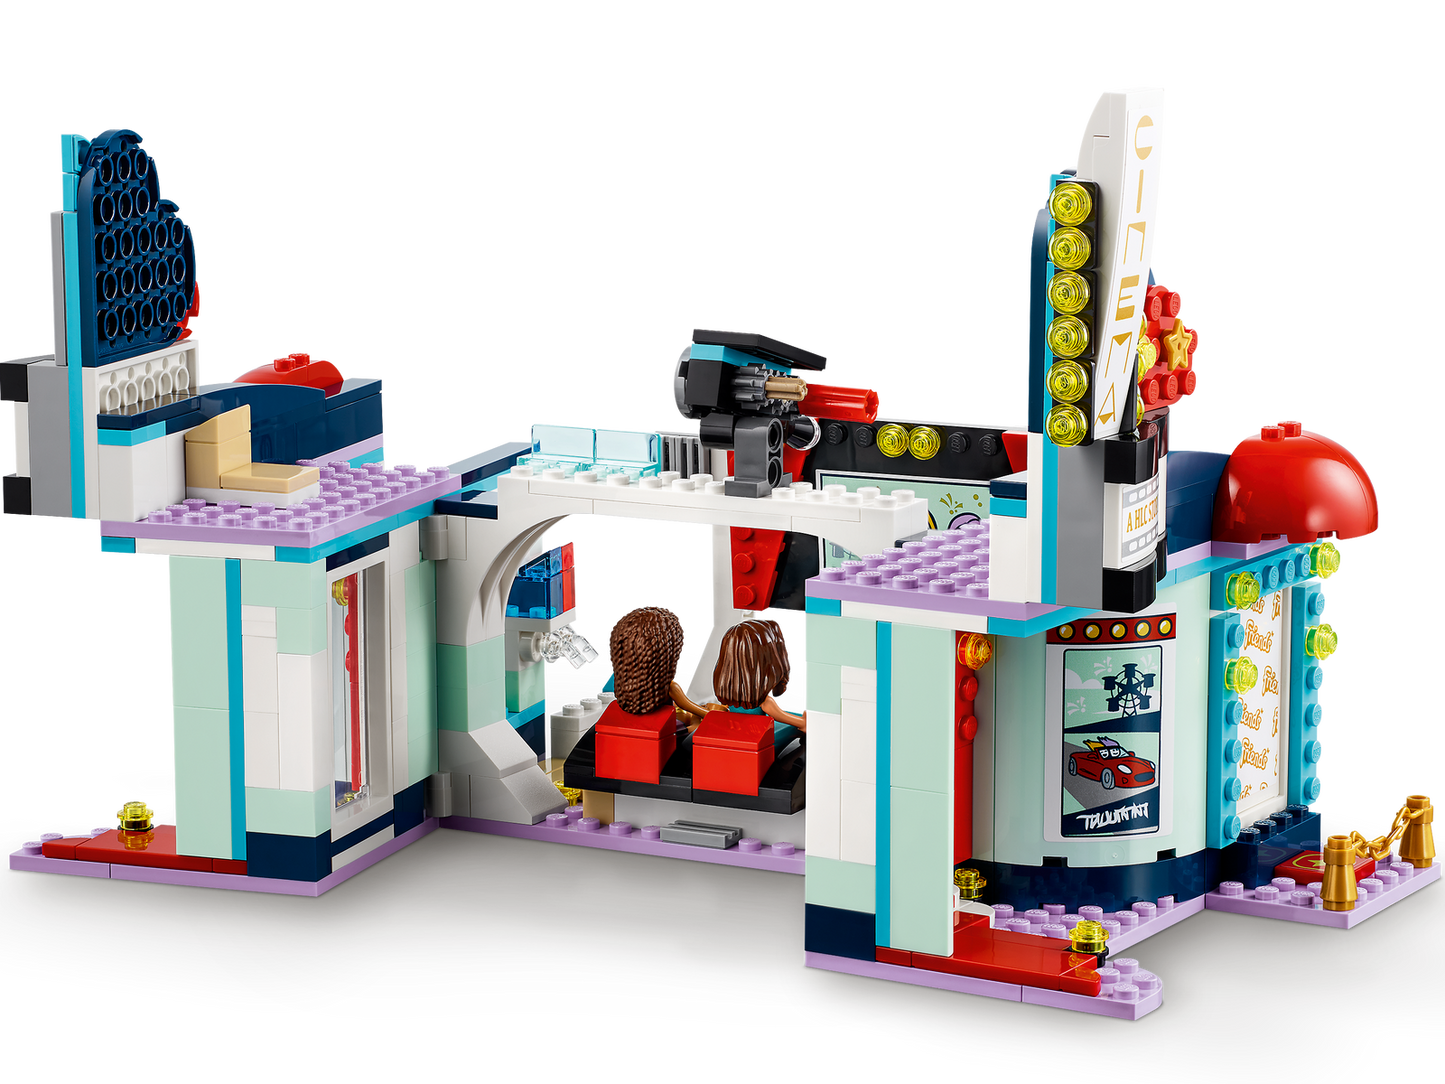 LEGO Friends Heartlake City Movie Theatre 41448